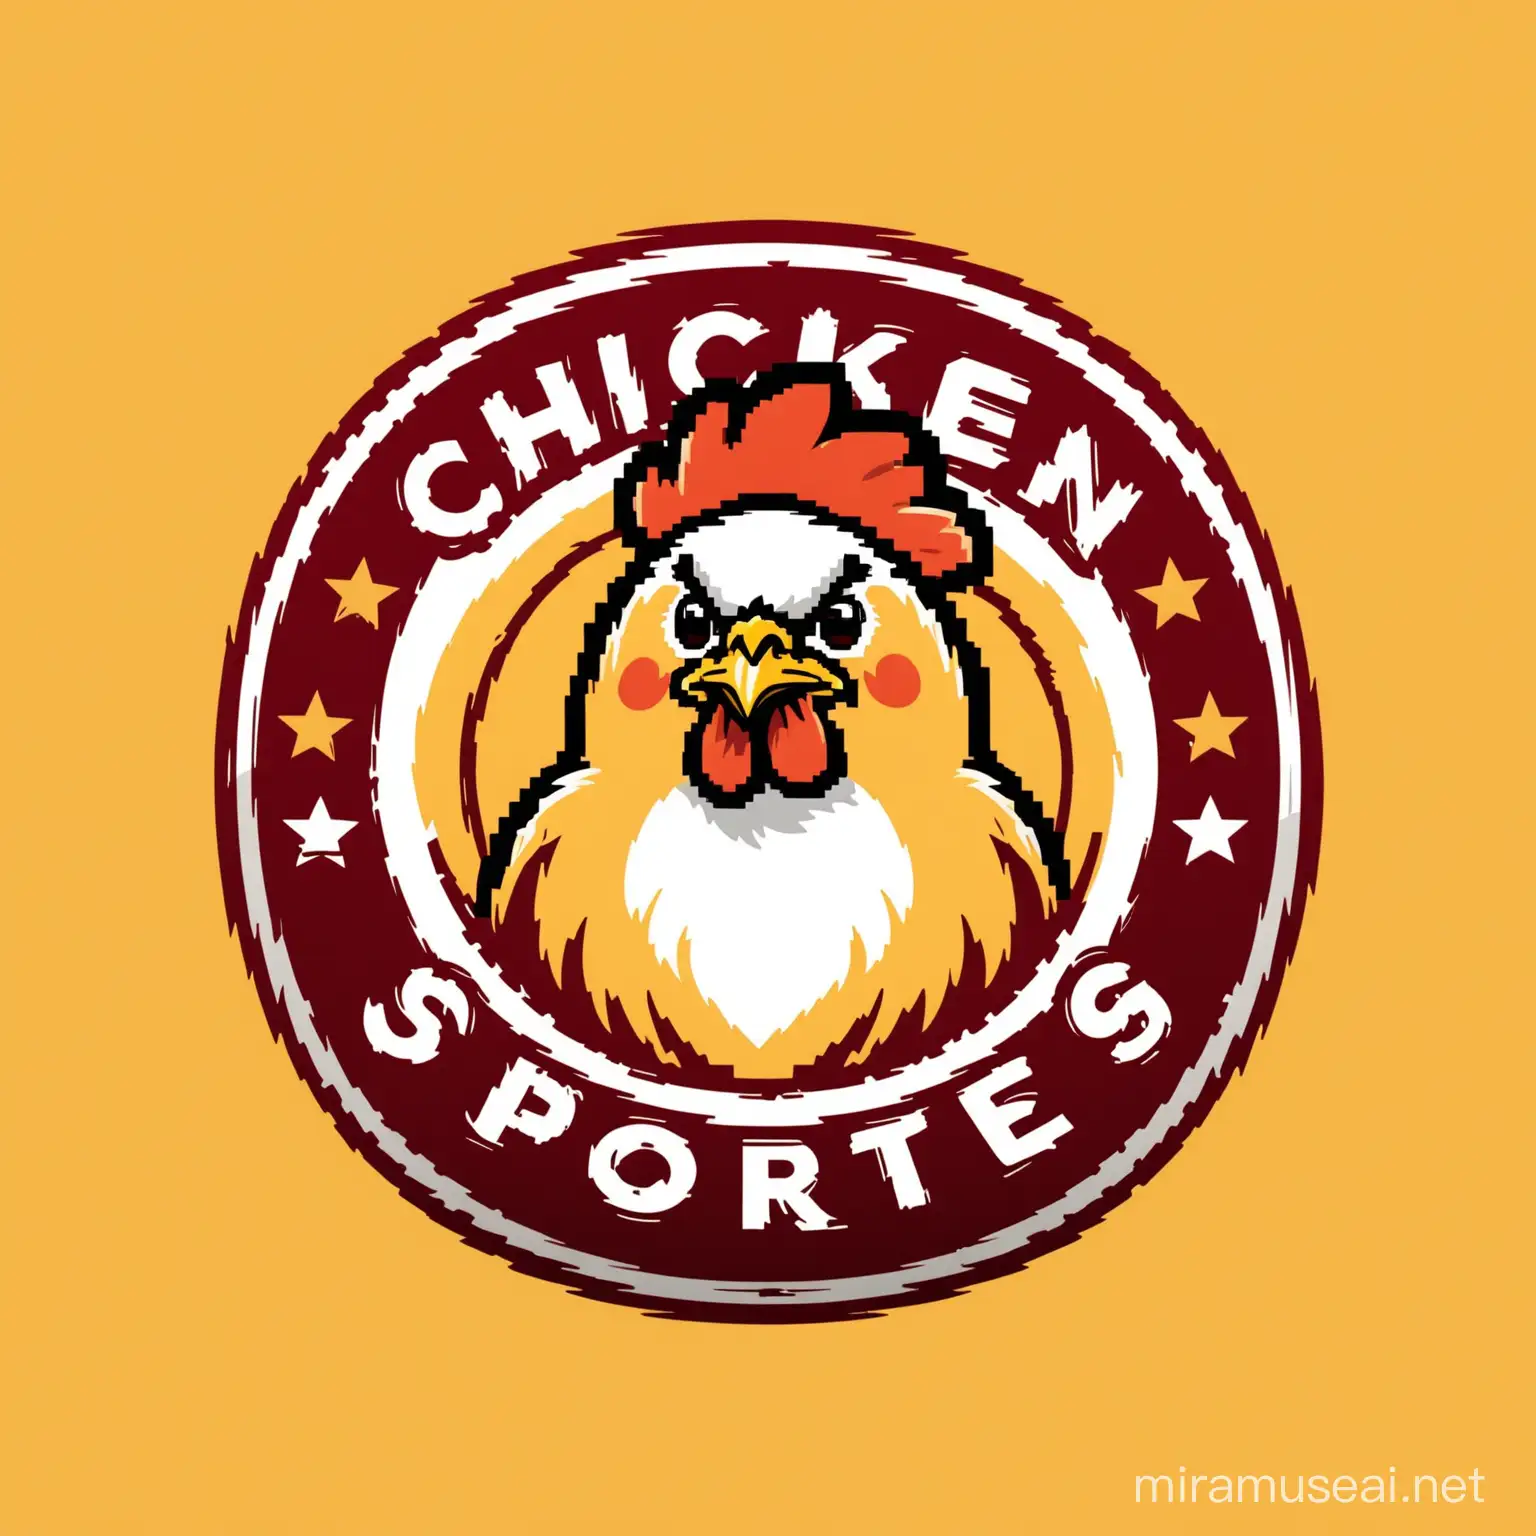 round sports logo with chicken theme